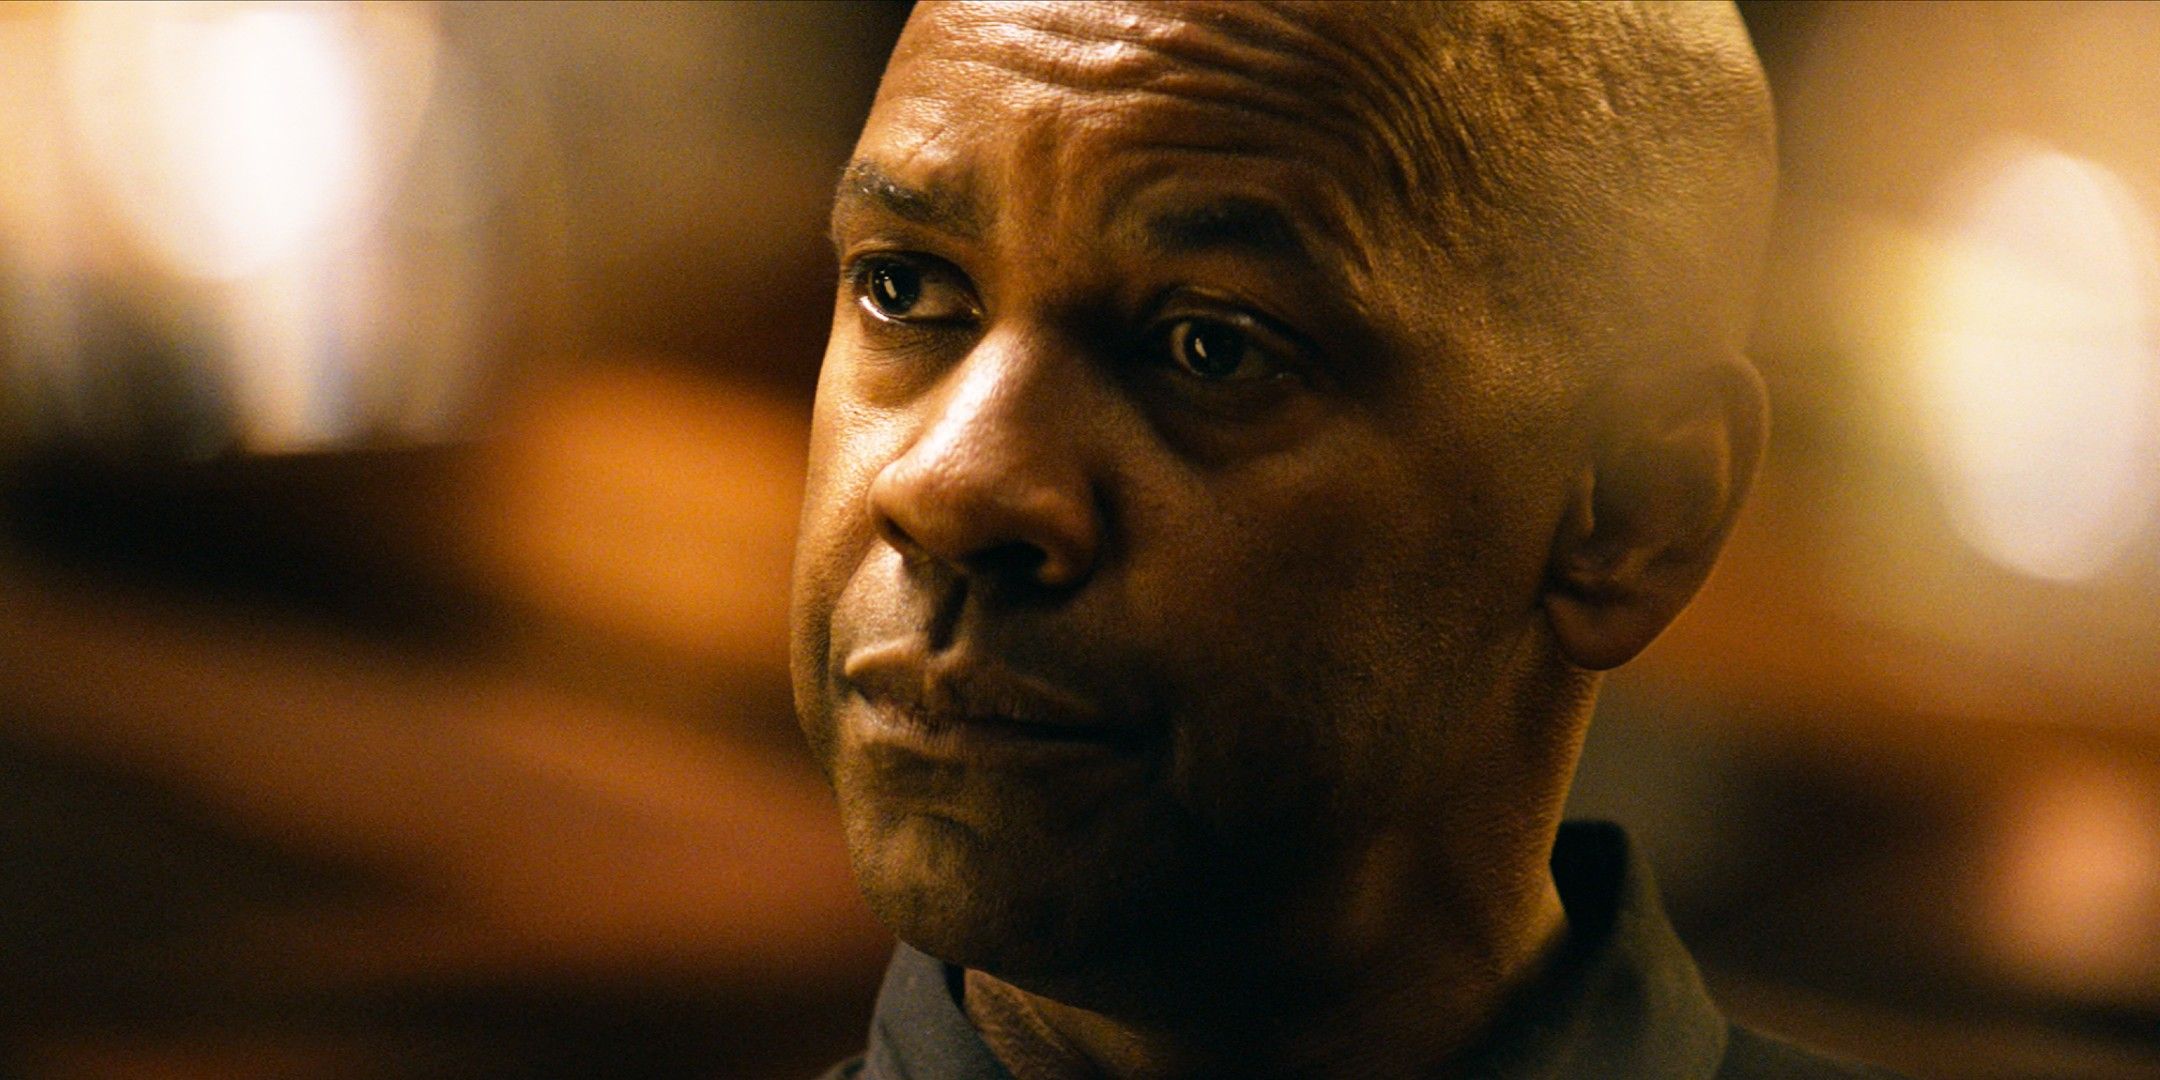 El thriller de acción violenta de Denzel Washington se convierte en un éxito mundial de Netflix 10 años después